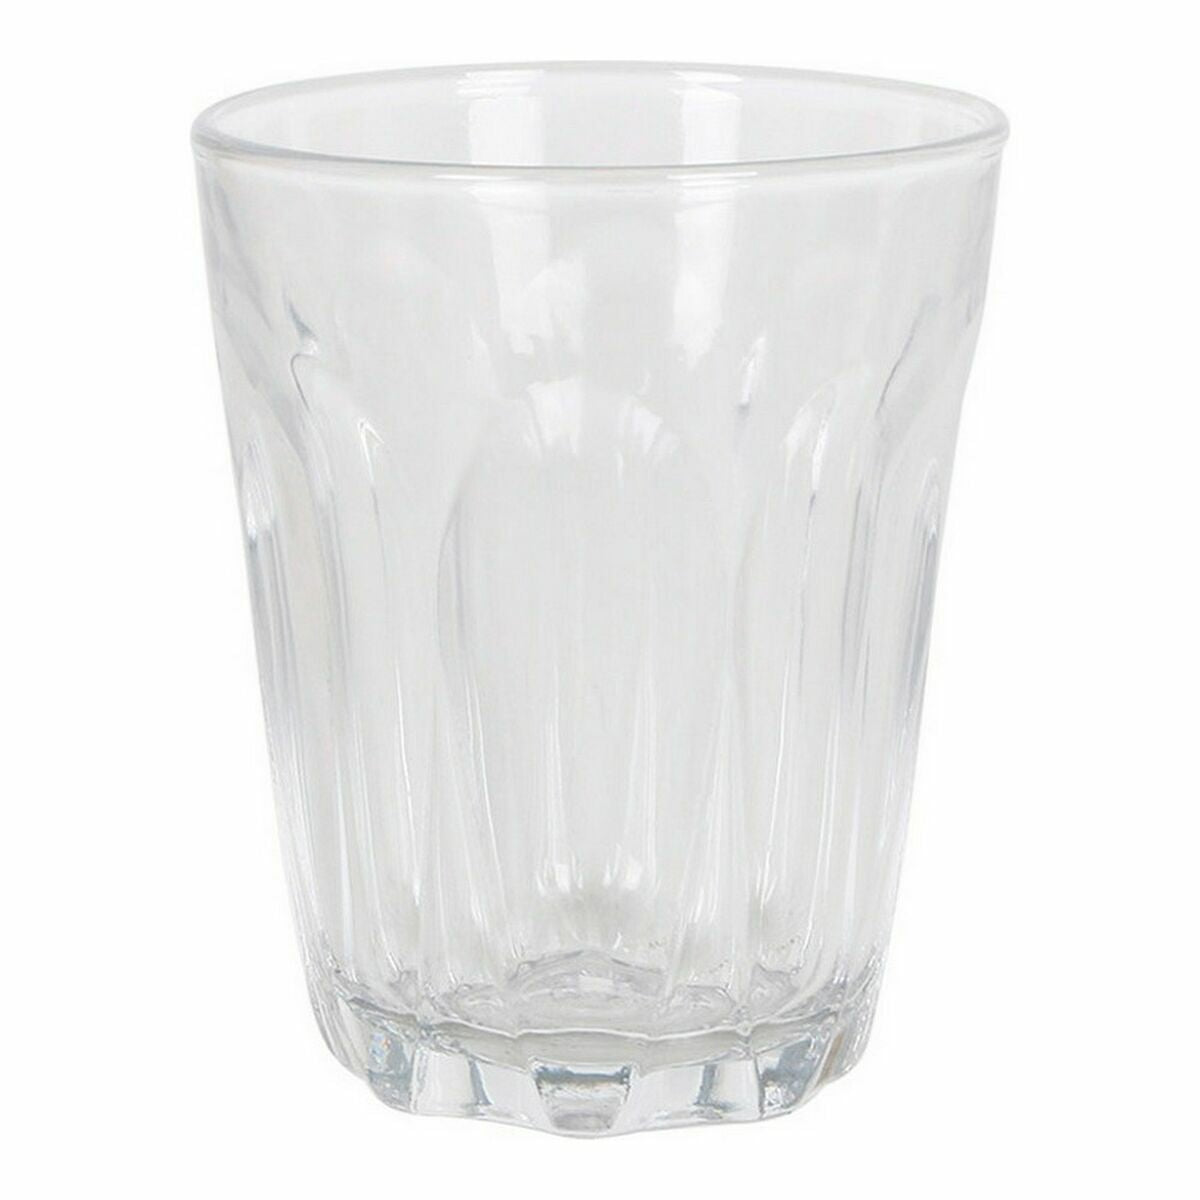 Glasset Duralex Provence Glas Transparent (6 pcs)